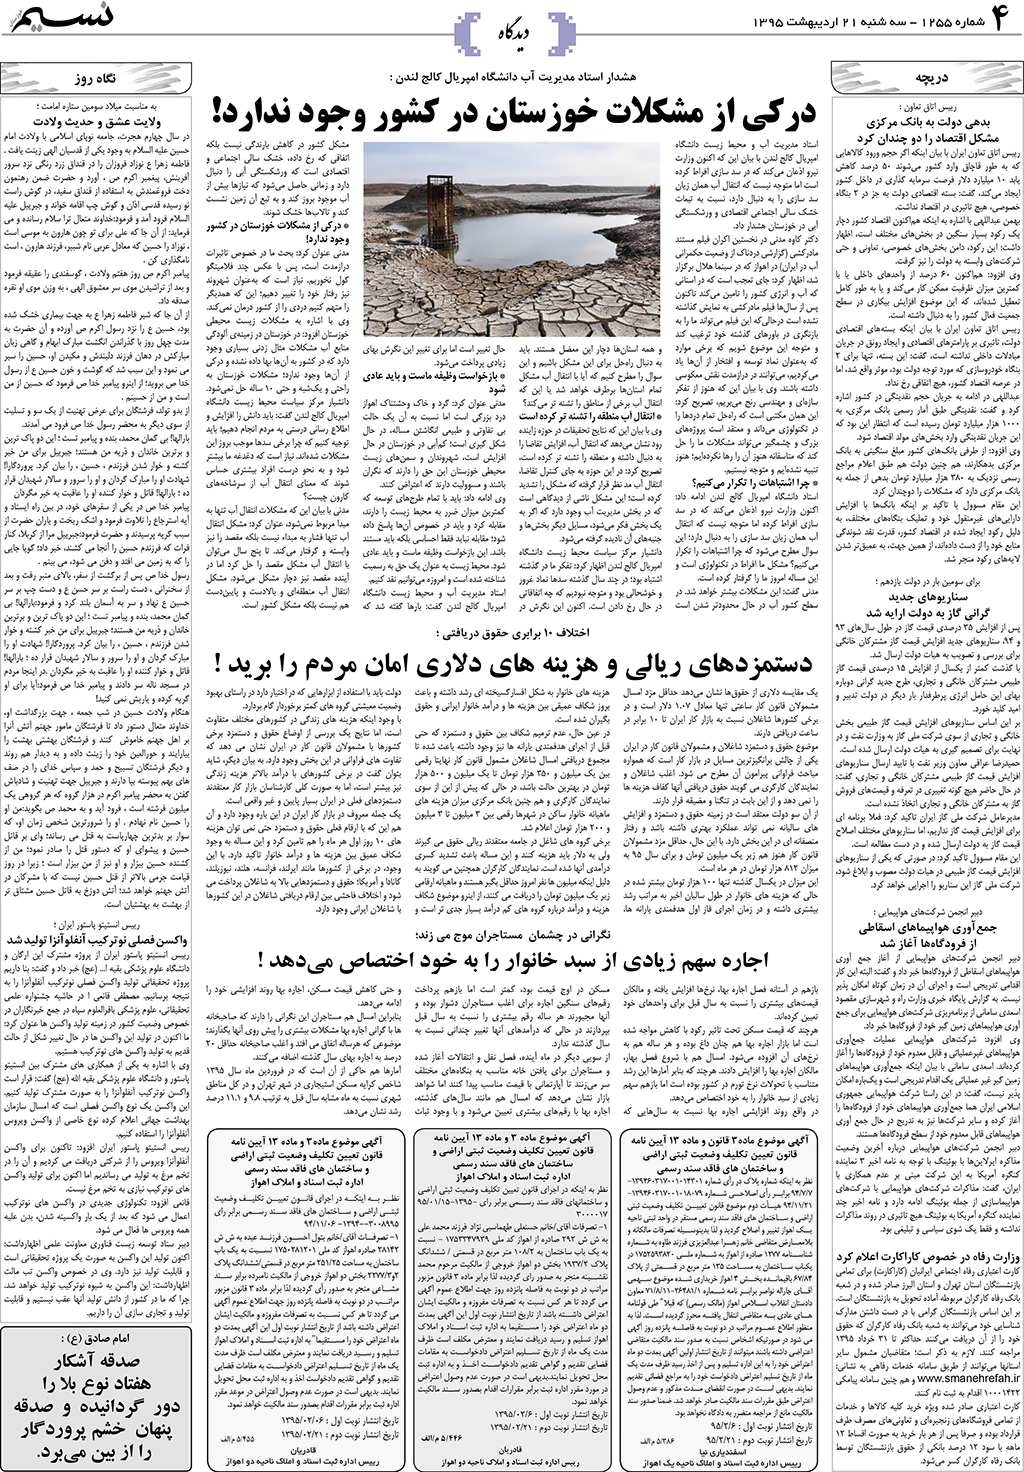 صفحه دیدگاه روزنامه نسیم شماره 1255